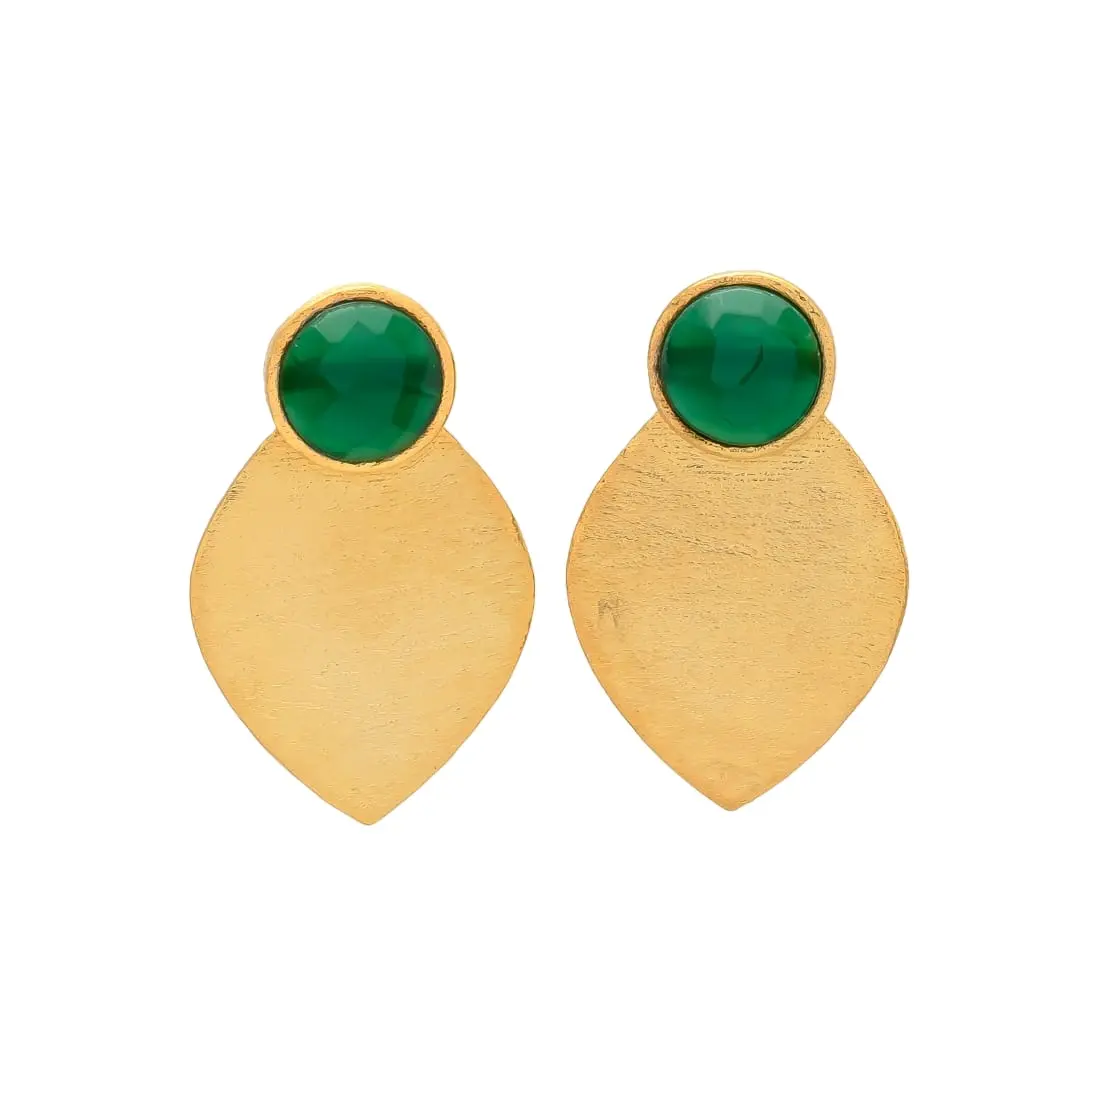 Anting-anting pernyataan hijau dan emas Regal anting-anting daun batu permata hijau zamrud berlapis emas desainer anting-anting untuk wanita